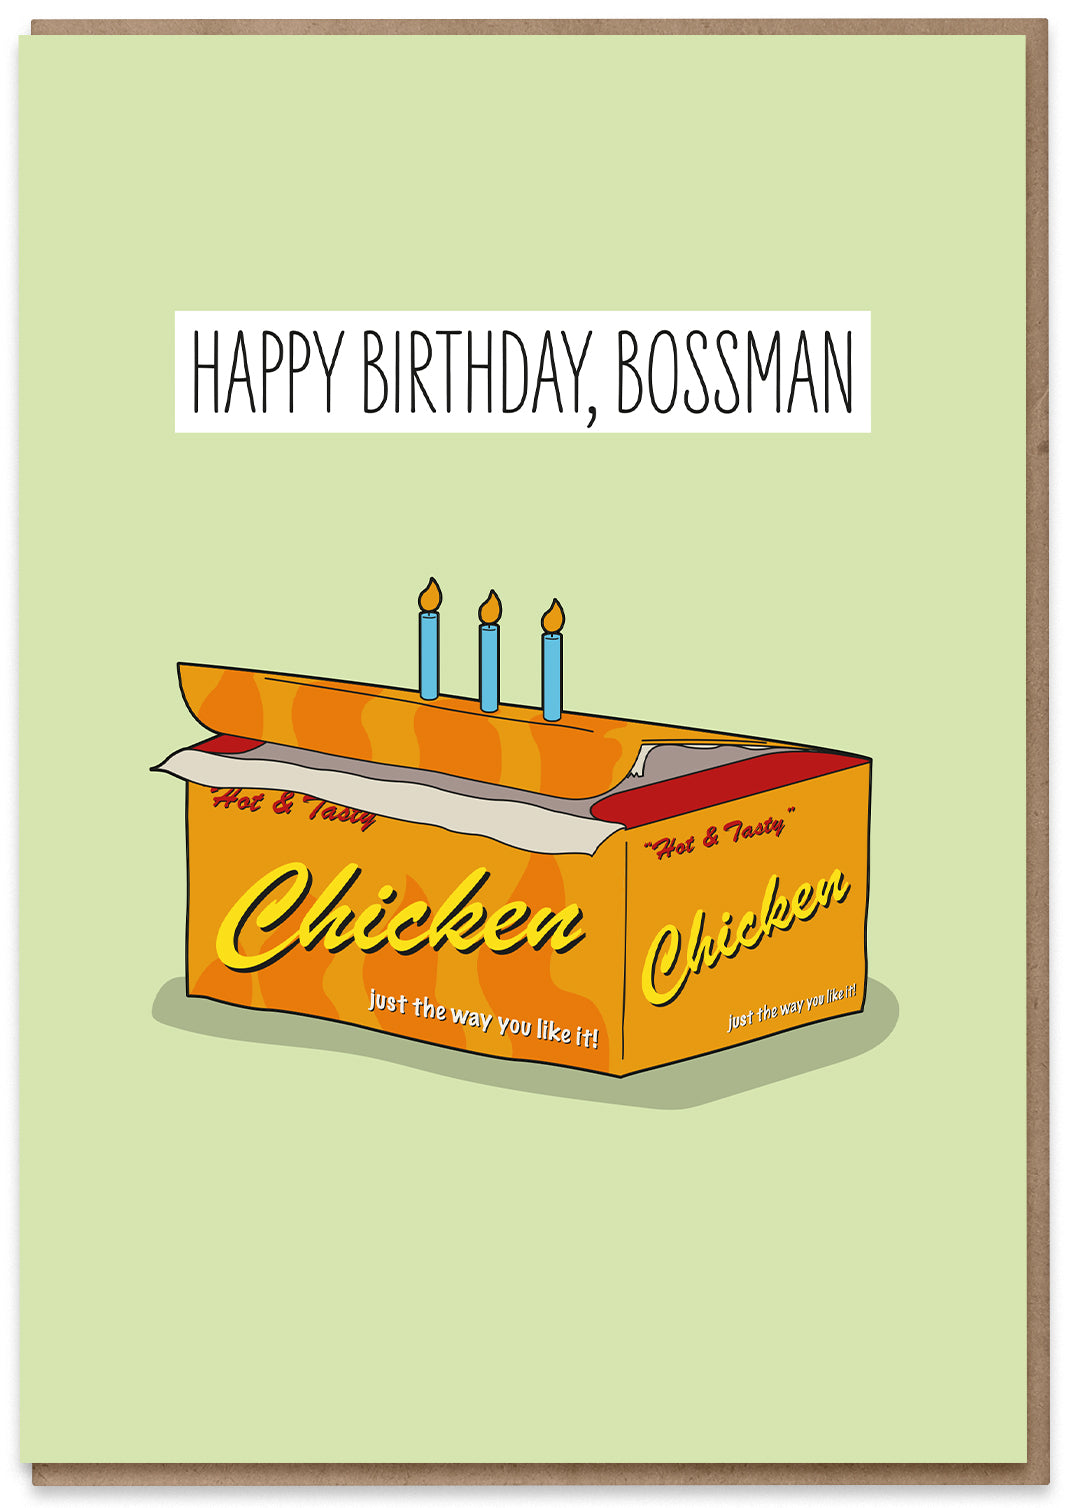 Birthday Bossman